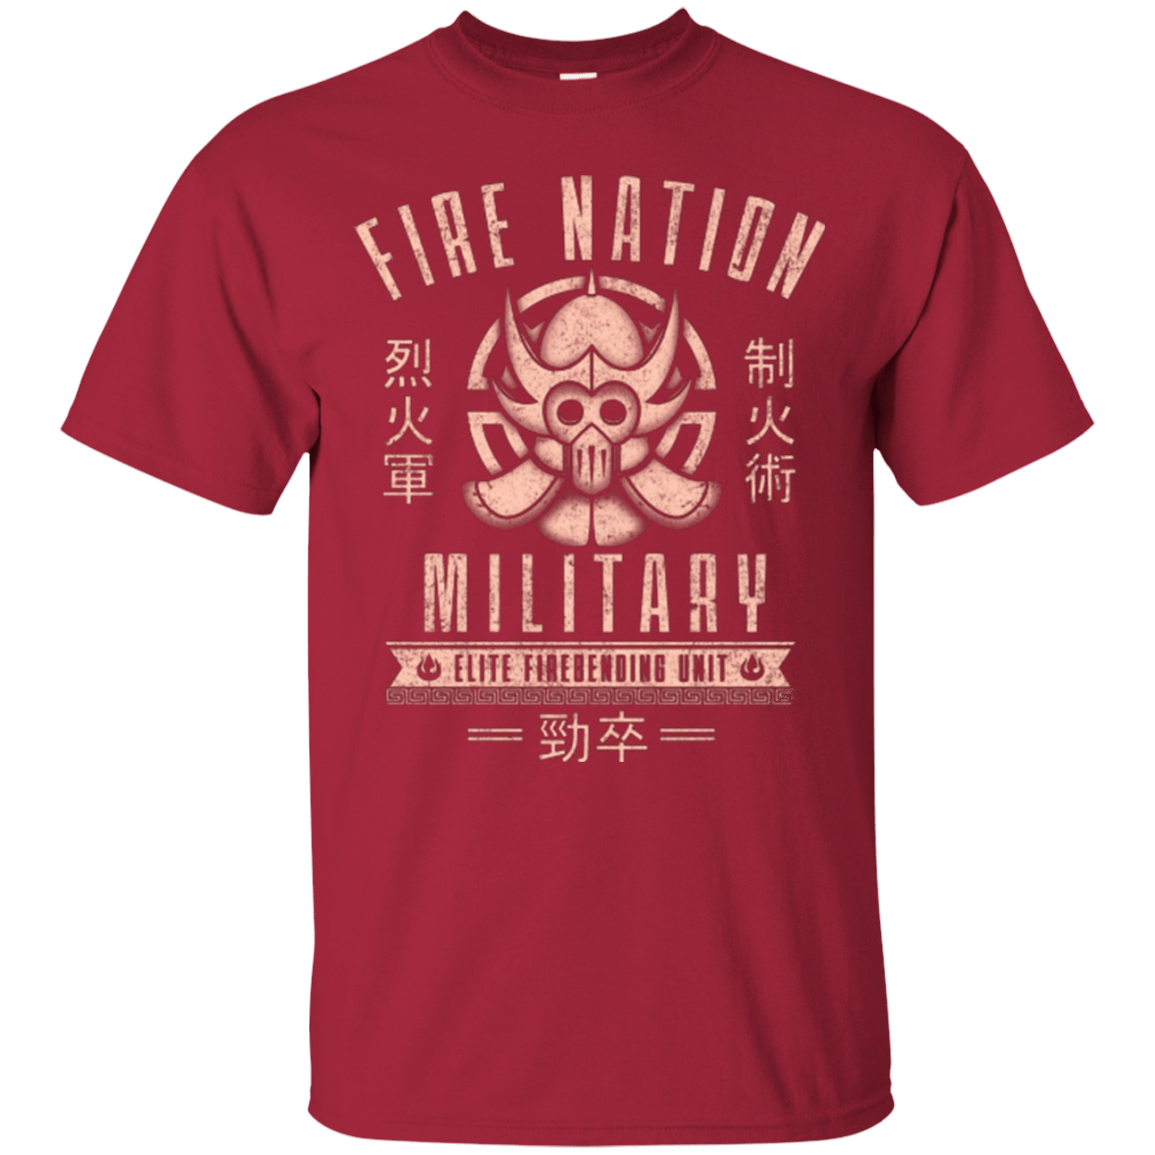 T-Shirts Cardinal / Small Fire is Fierce T-Shirt